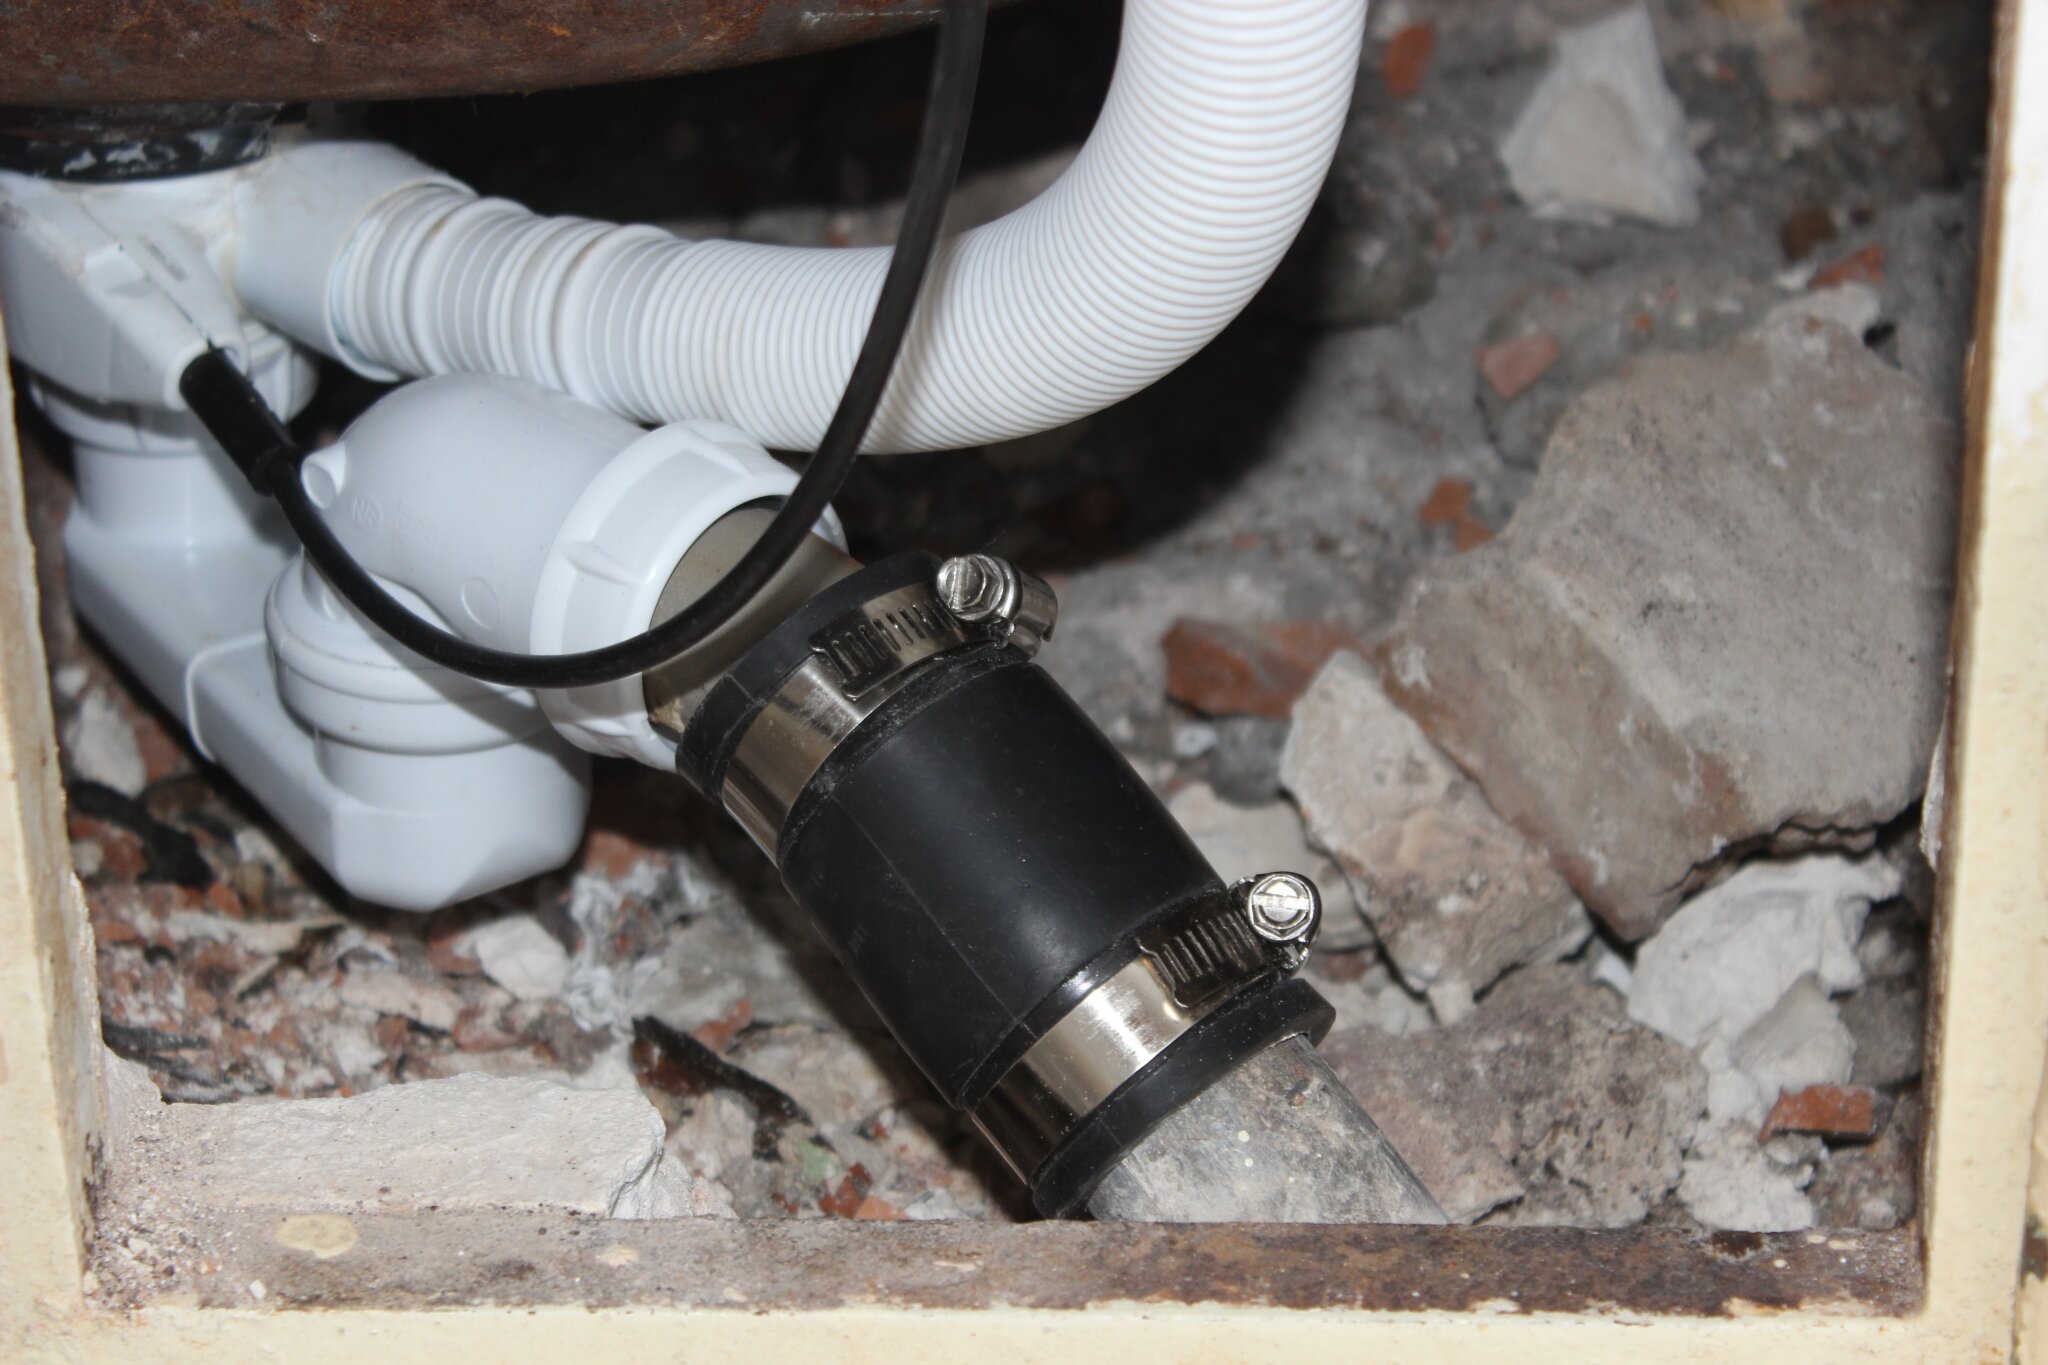 Comment colmater une fuite d'eau sur un tuyau cuivre / PVC ?